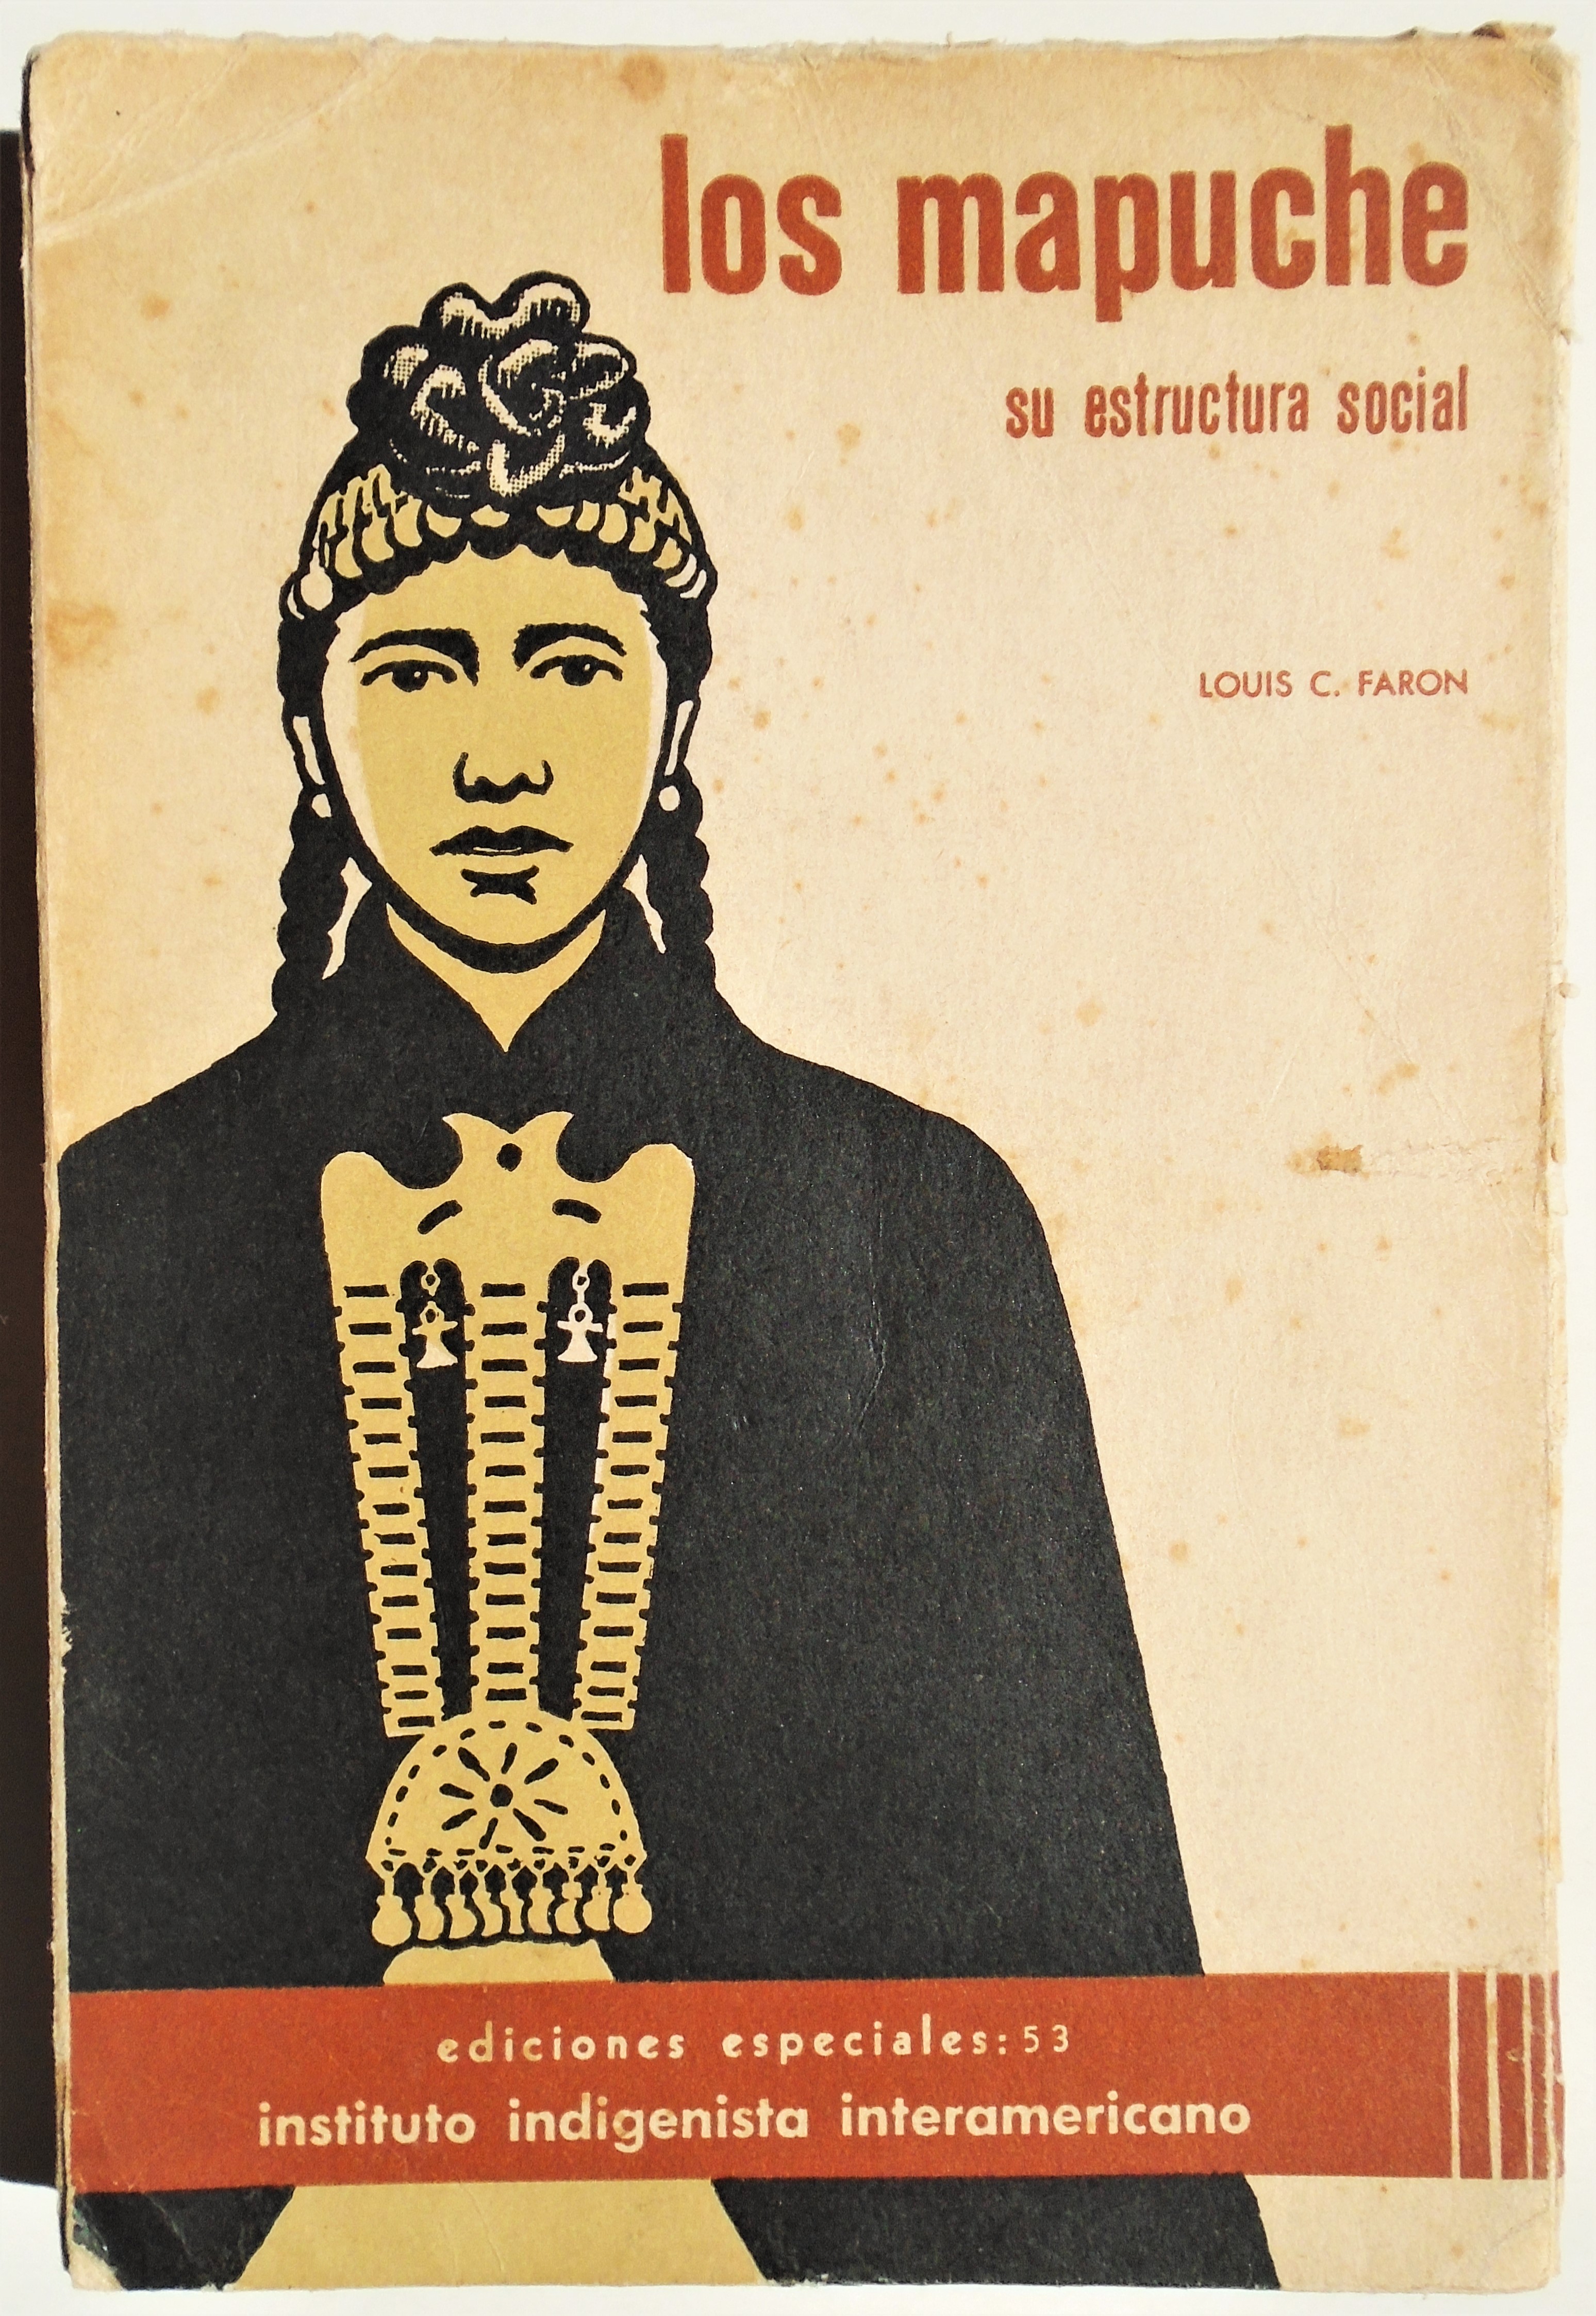 Louis Faron - Los mapuche, su estructura social